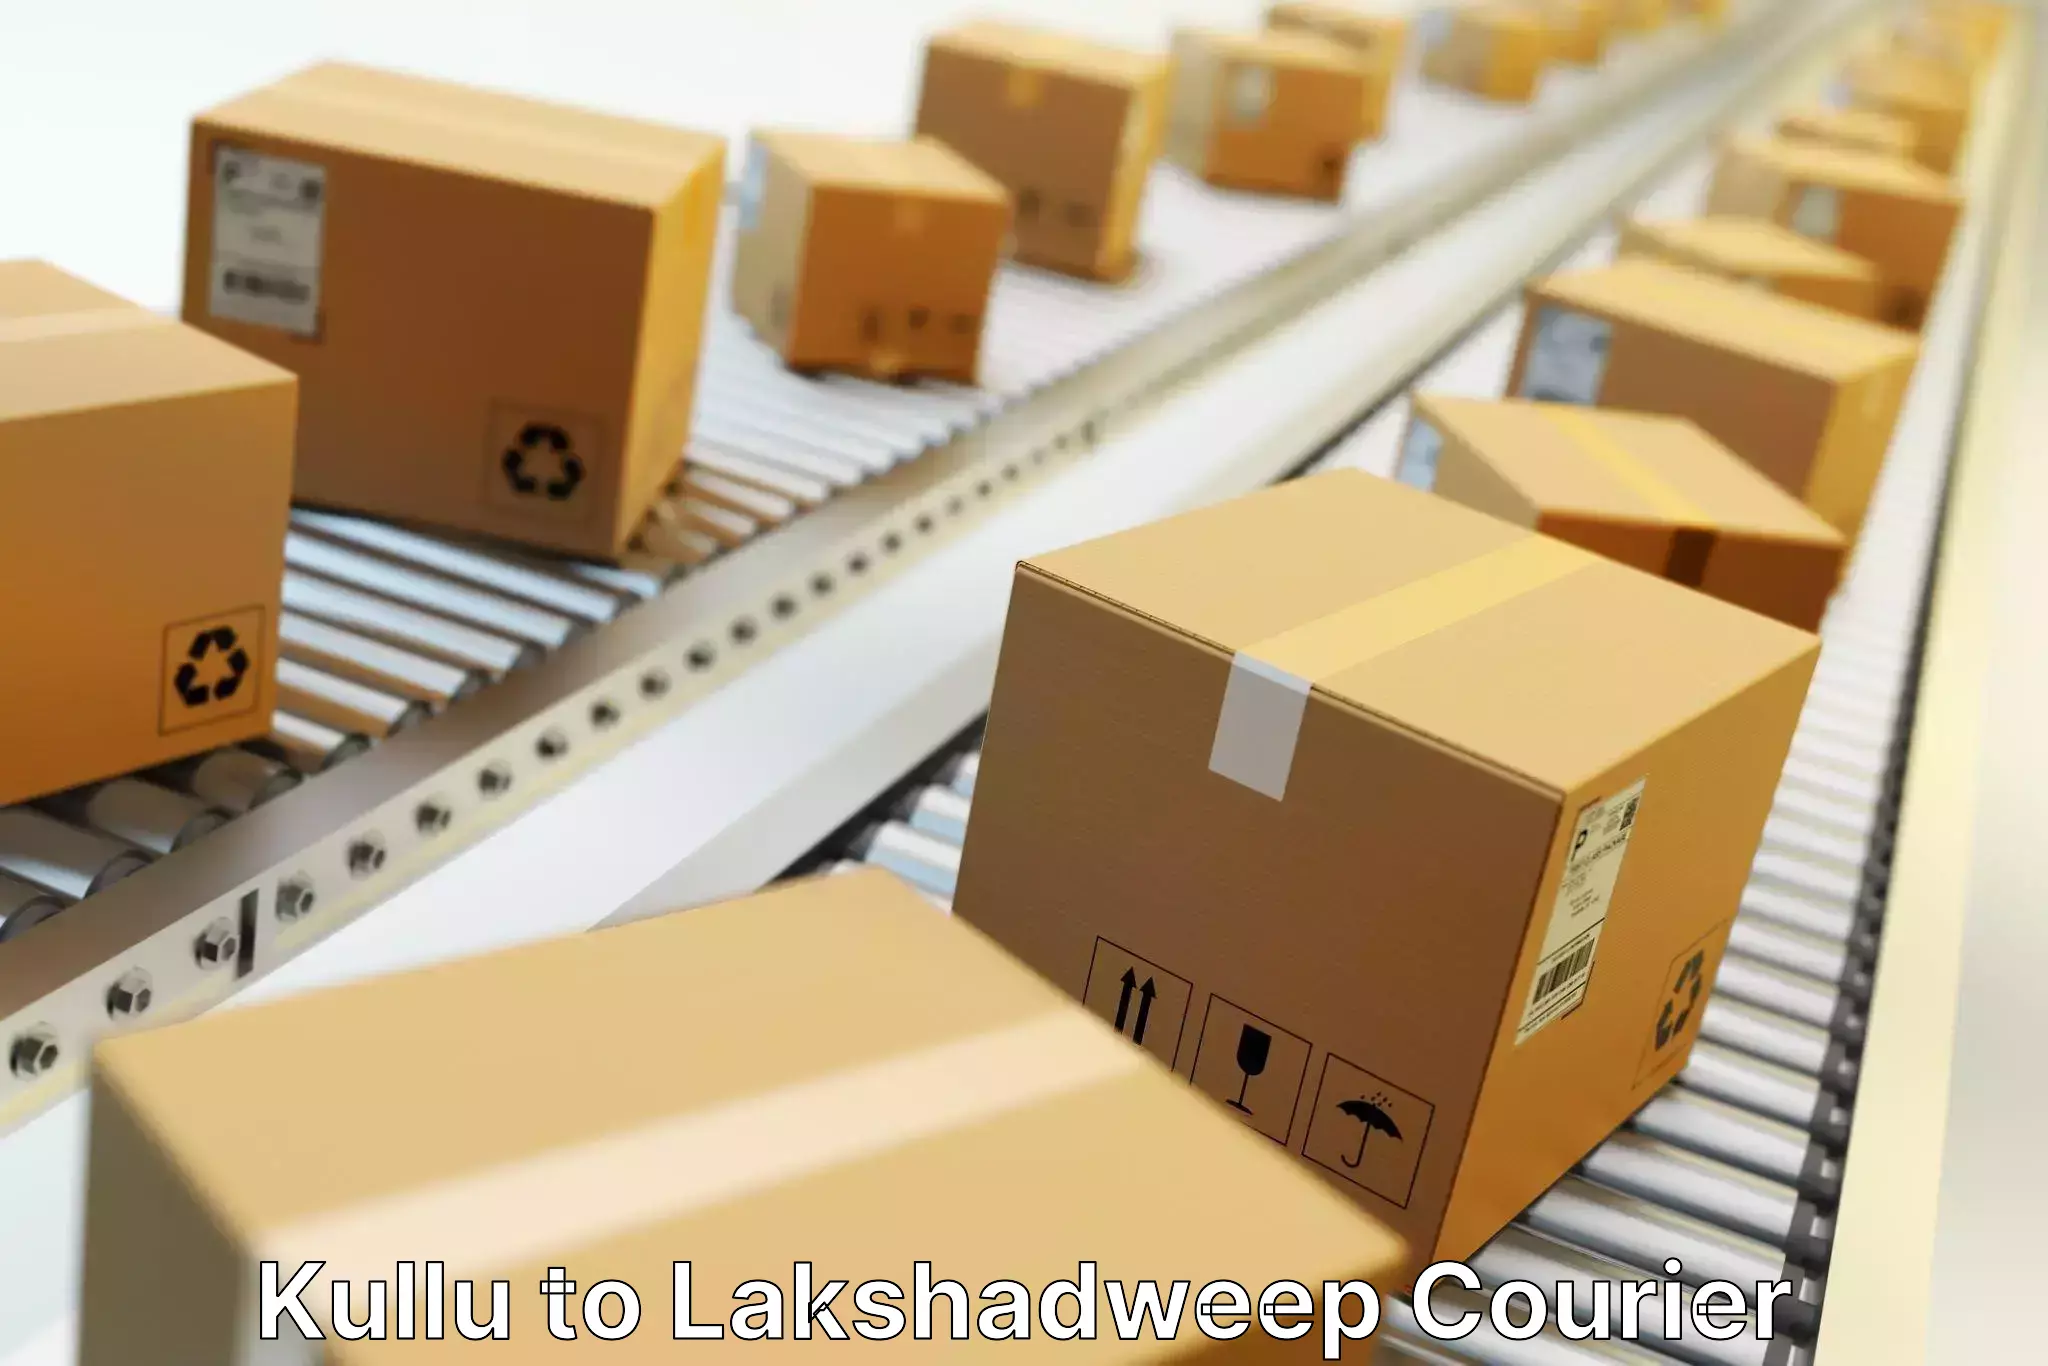 High-priority parcel service Kullu to Lakshadweep